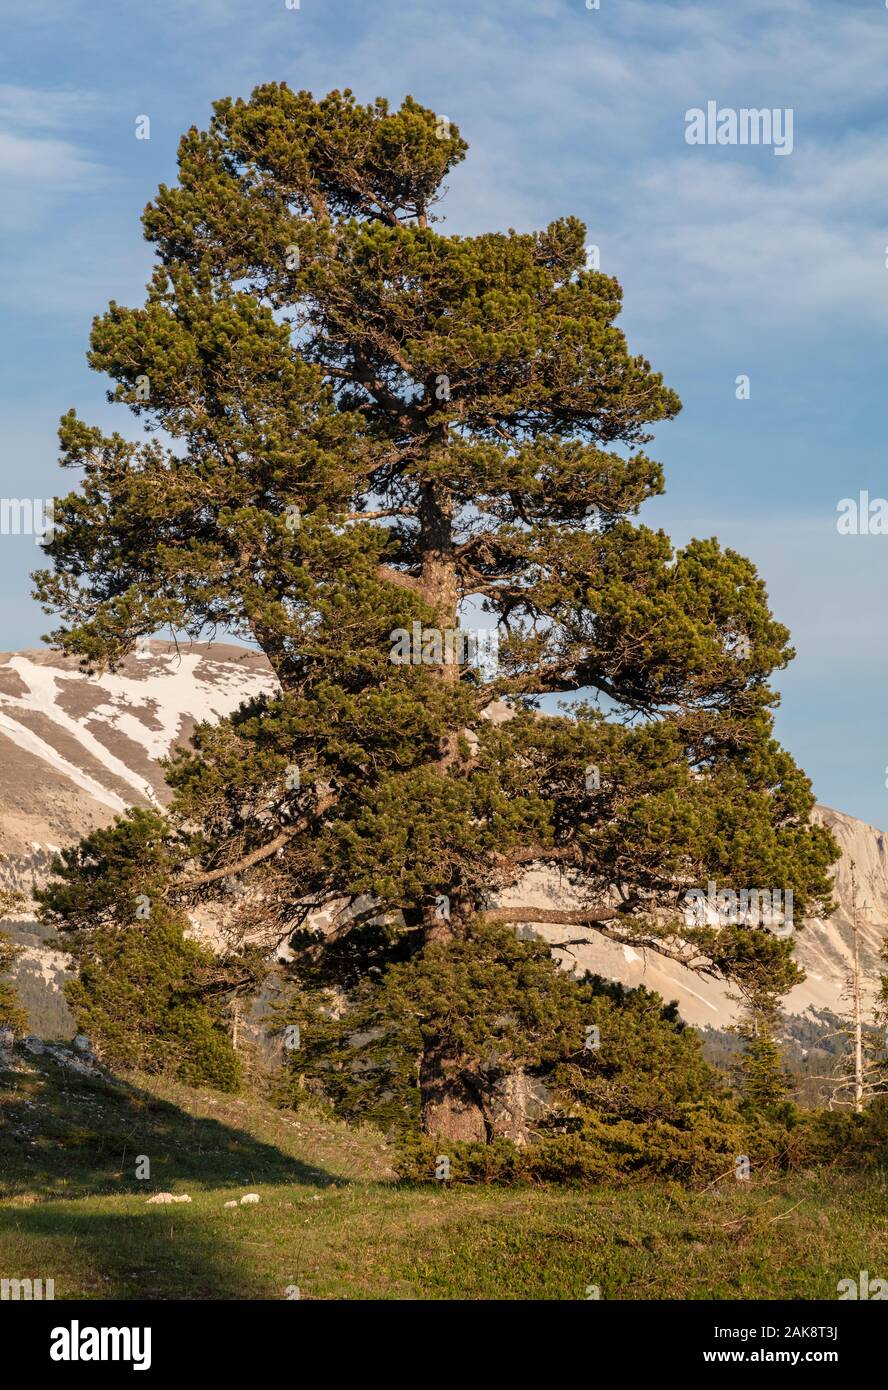 Mountain pine, Pinus mugo subsp. uncinata, on the high limestone plateau, Réserve naturelle des Hauts Plateaux du Vercors, Vercors mountains, France. Stock Photo